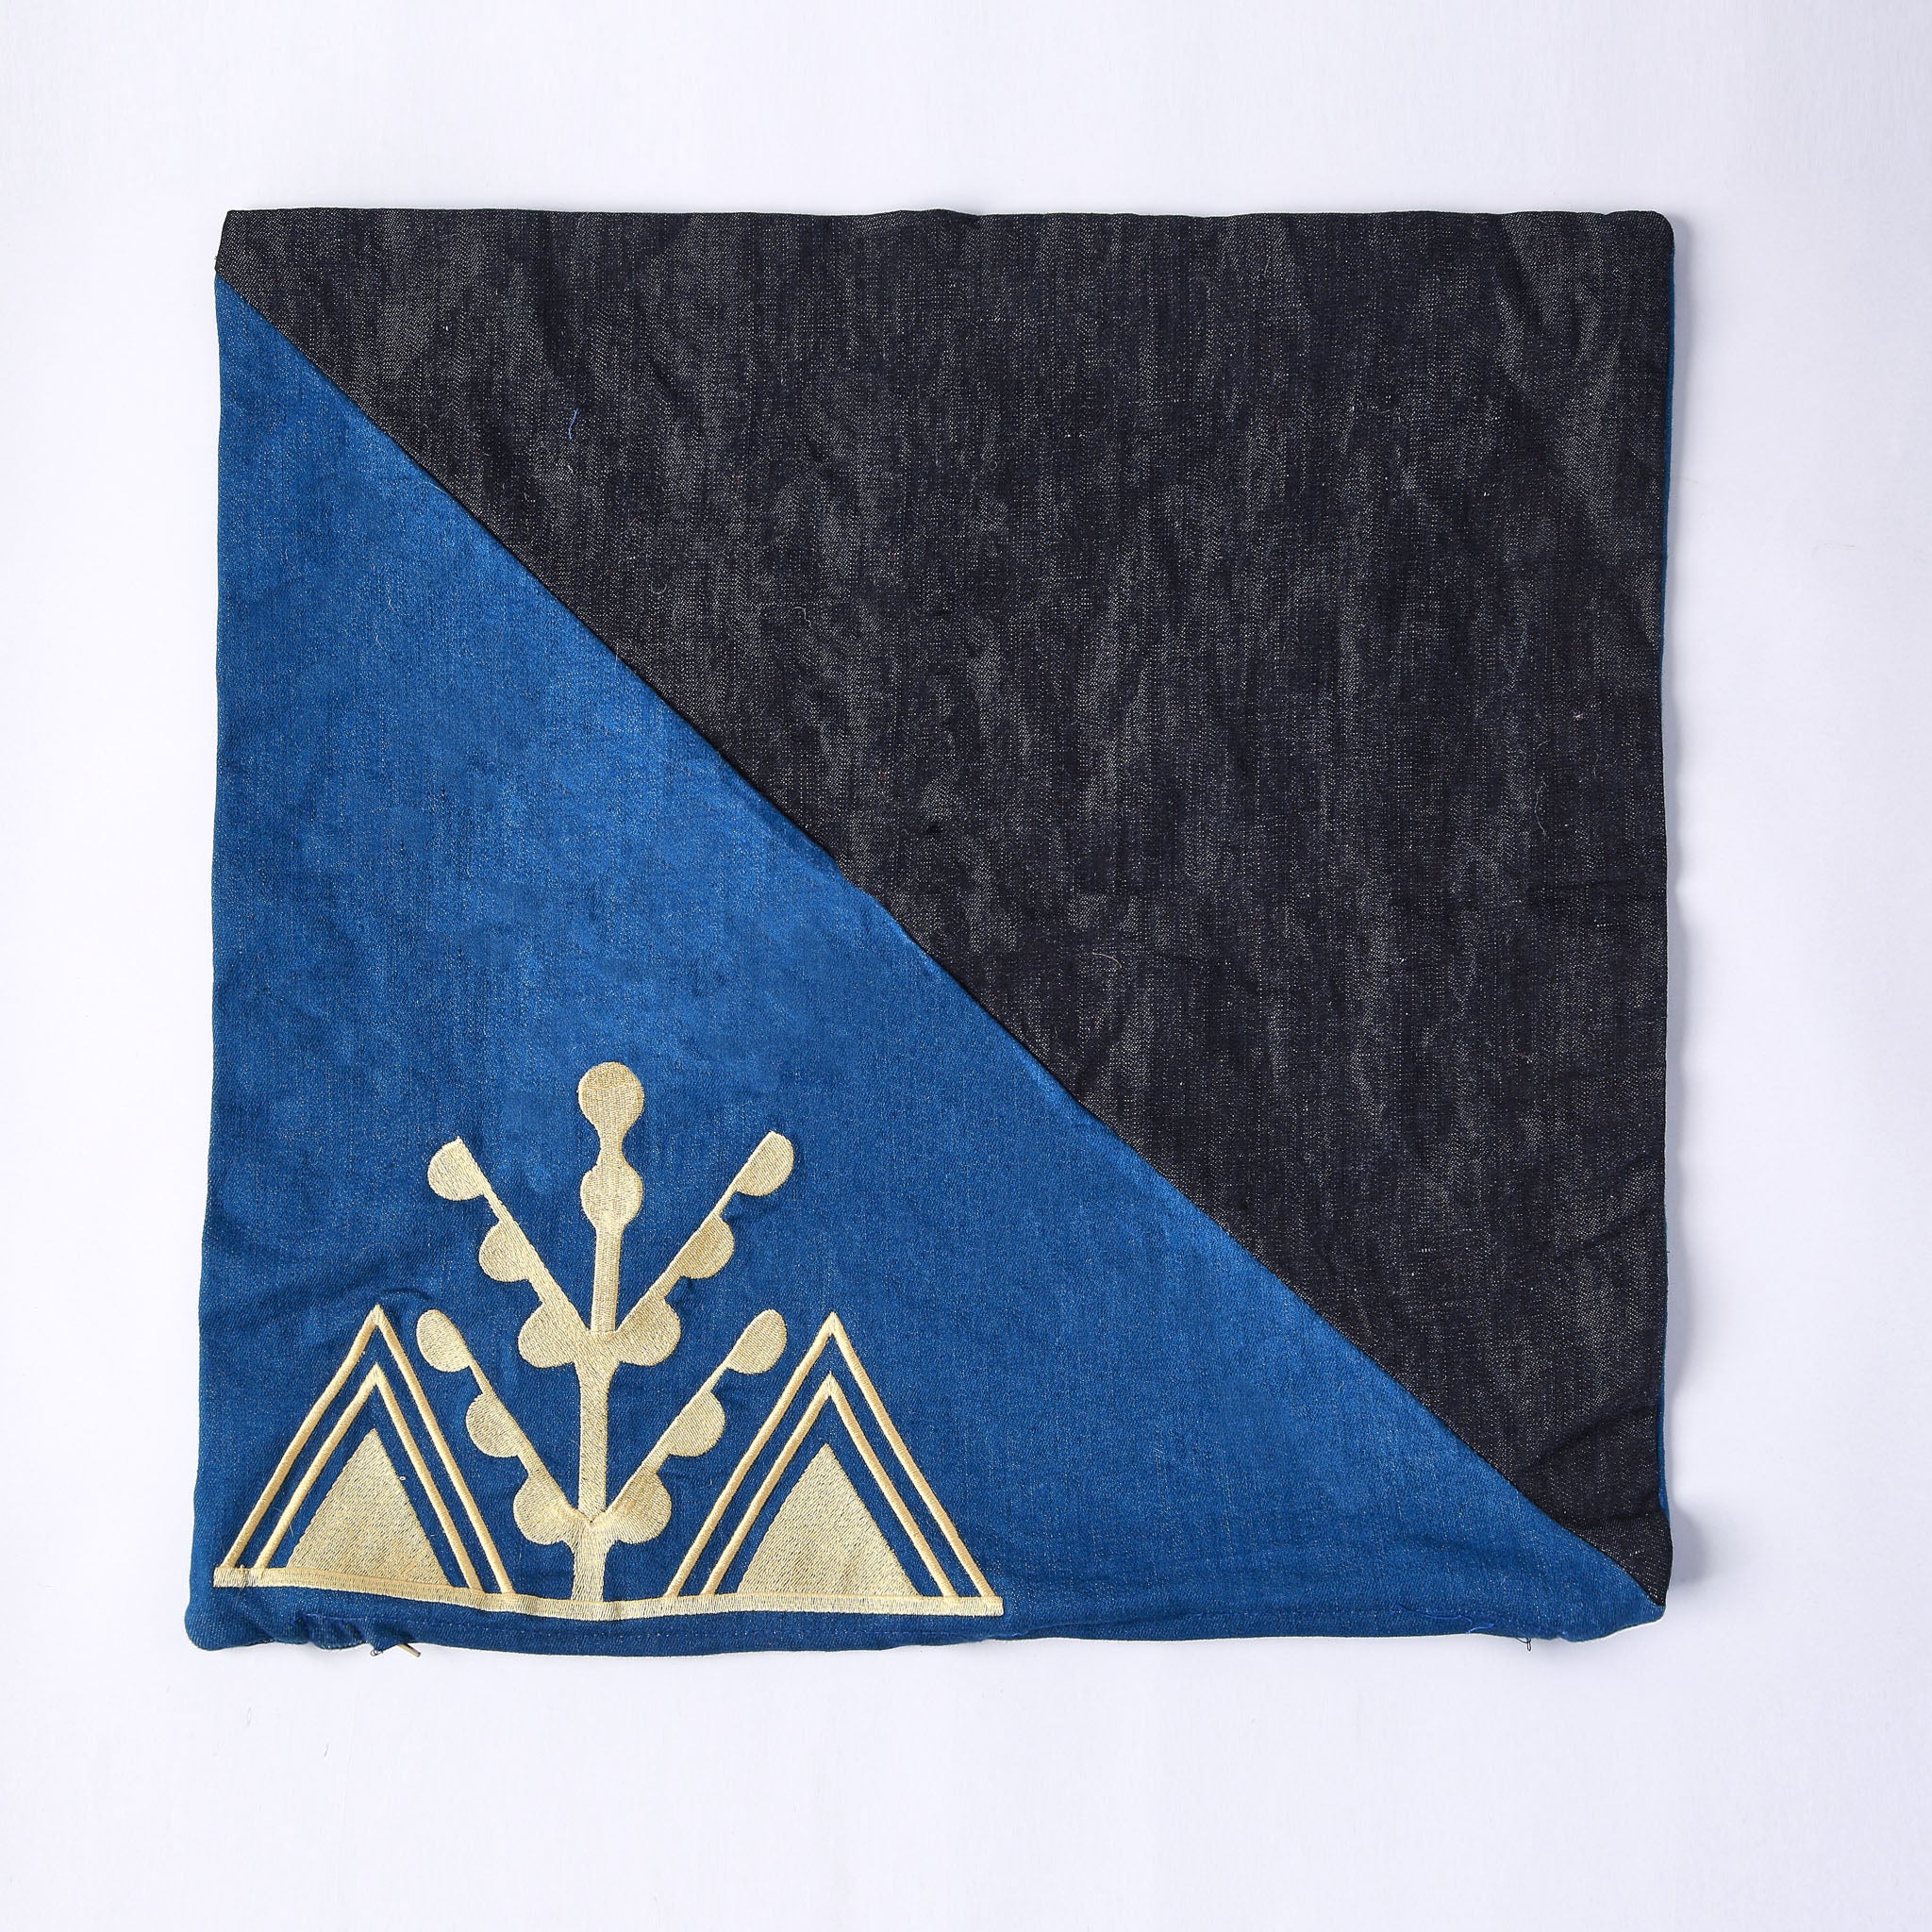 cuscino quadrato realizzato con tessuti in jeans di due colori e ricamo giallo del simbolo amazigh dell'ulivo